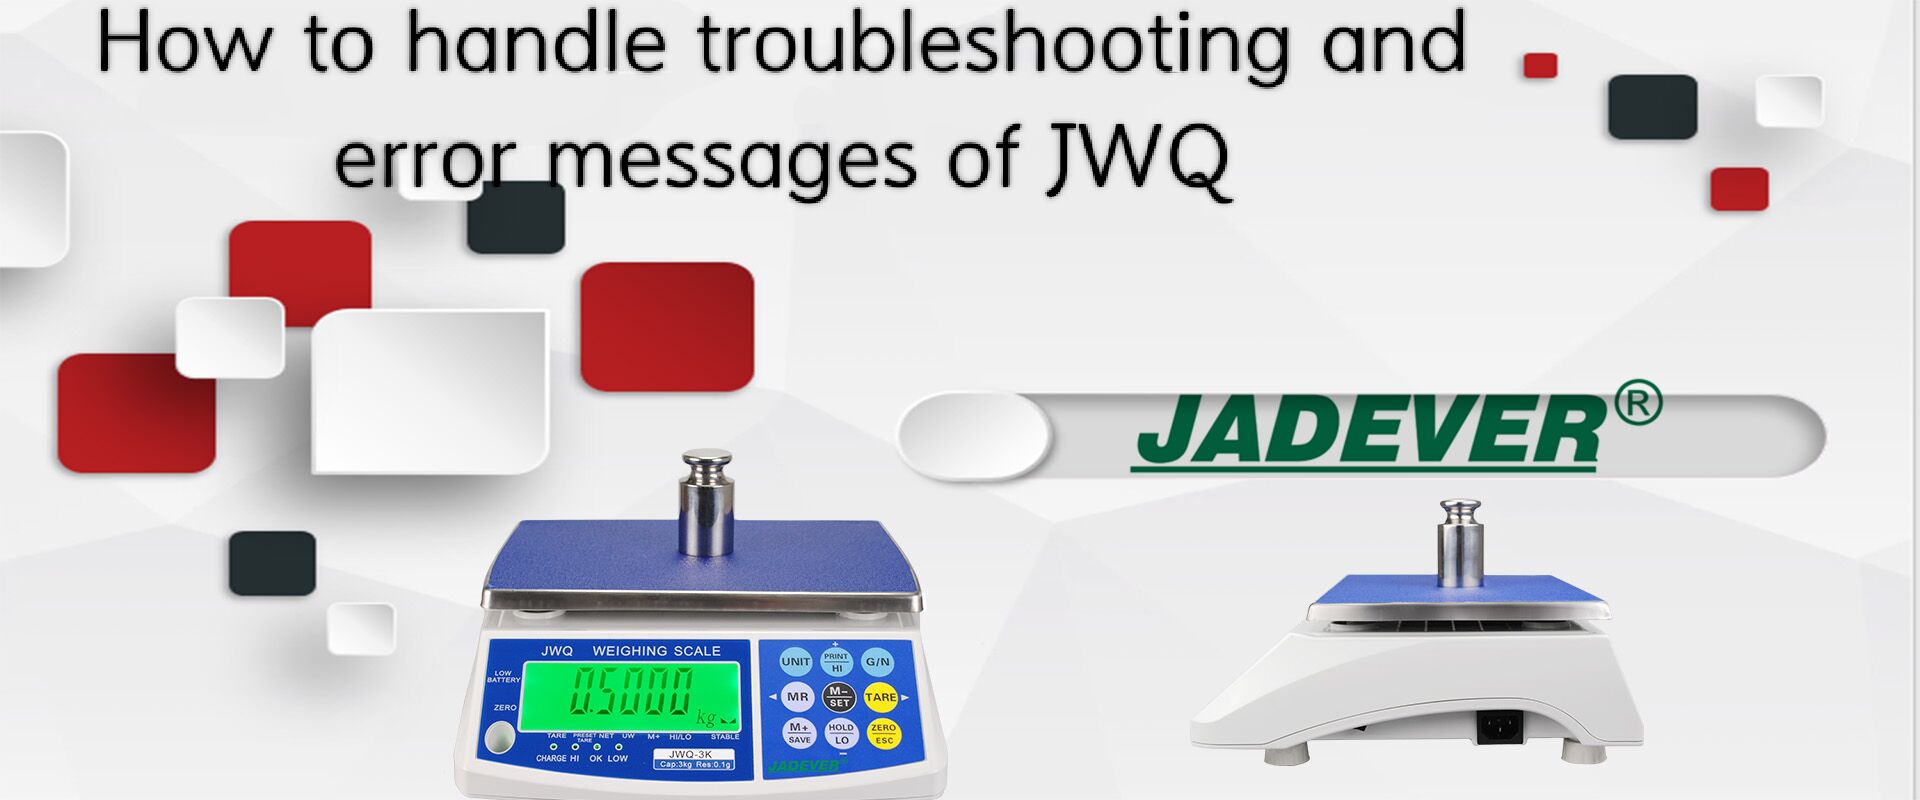 כיצד לטפל בפתרון בעיות והודעות שגיאה של JWQ?
